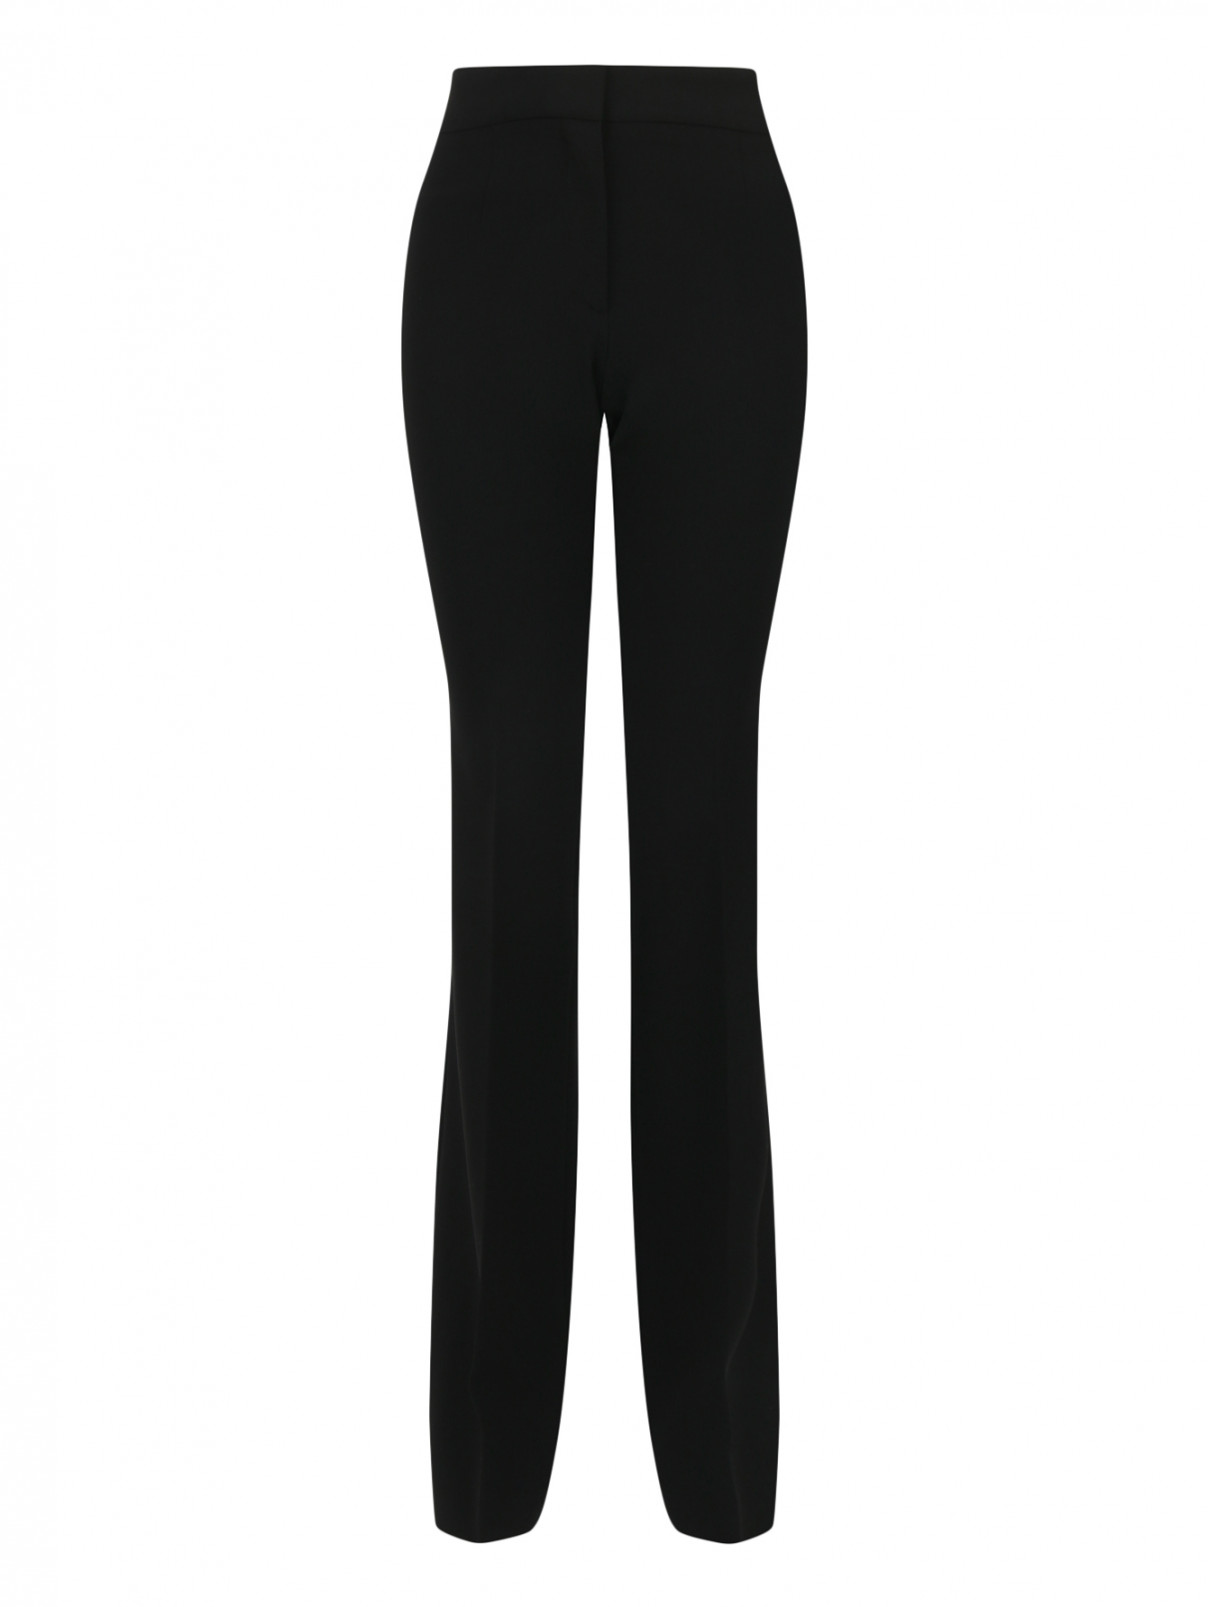 Прямые брюки со стрелками Moschino Couture  –  Общий вид  – Цвет:  Черный